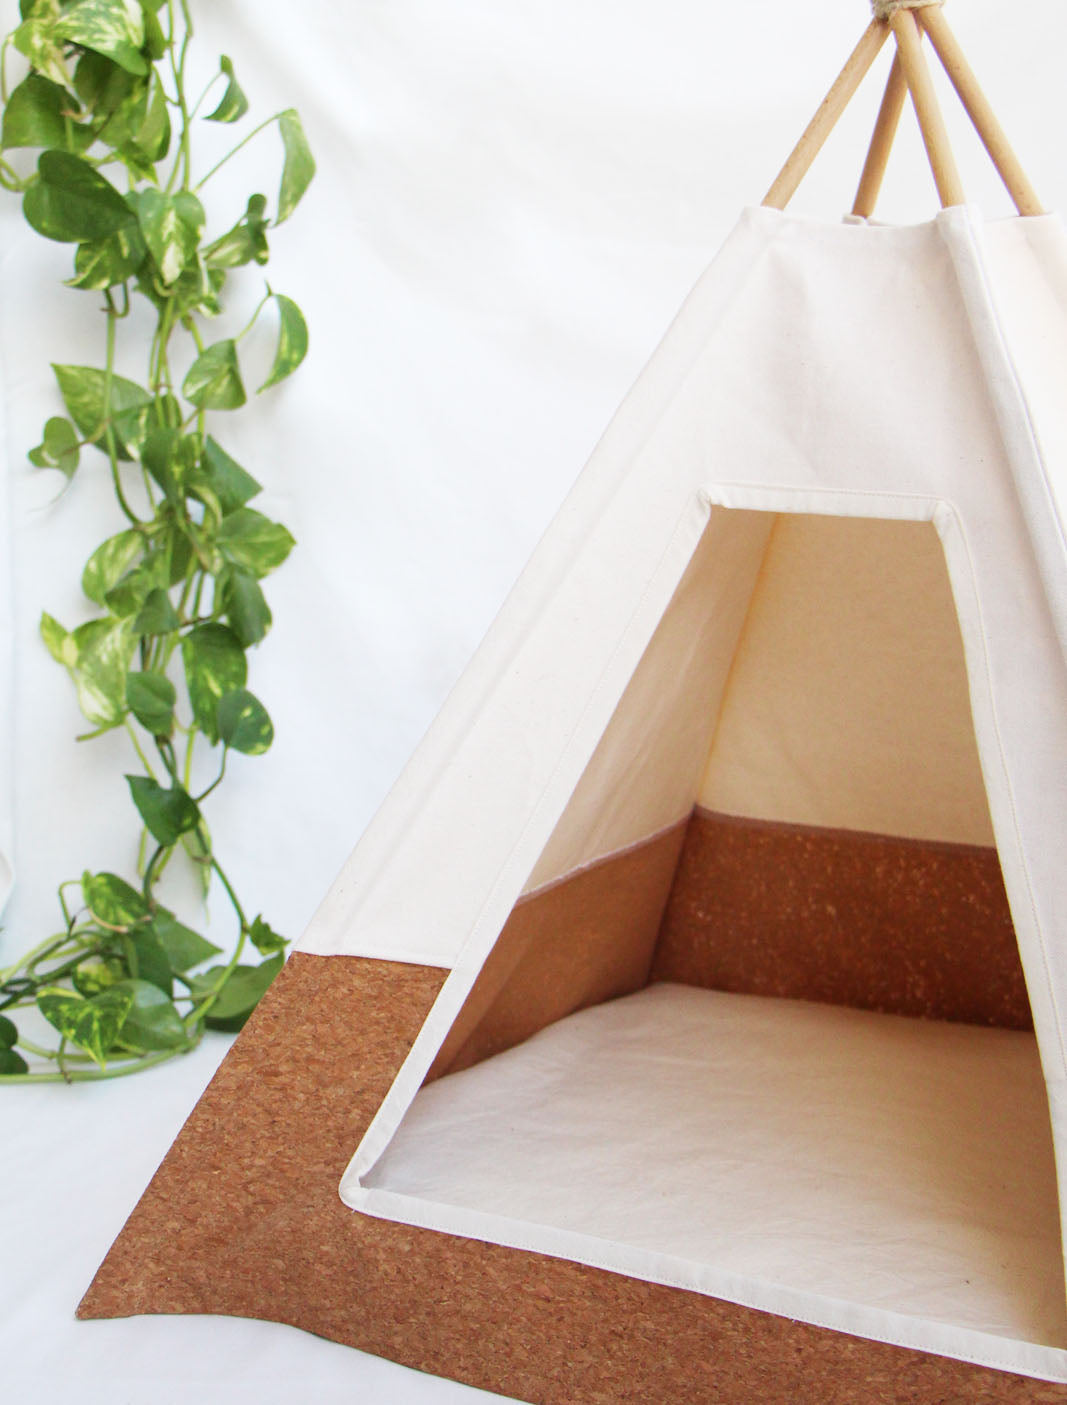 Tipi pour Chat : Tente Triangulaire Confortable et Chaude